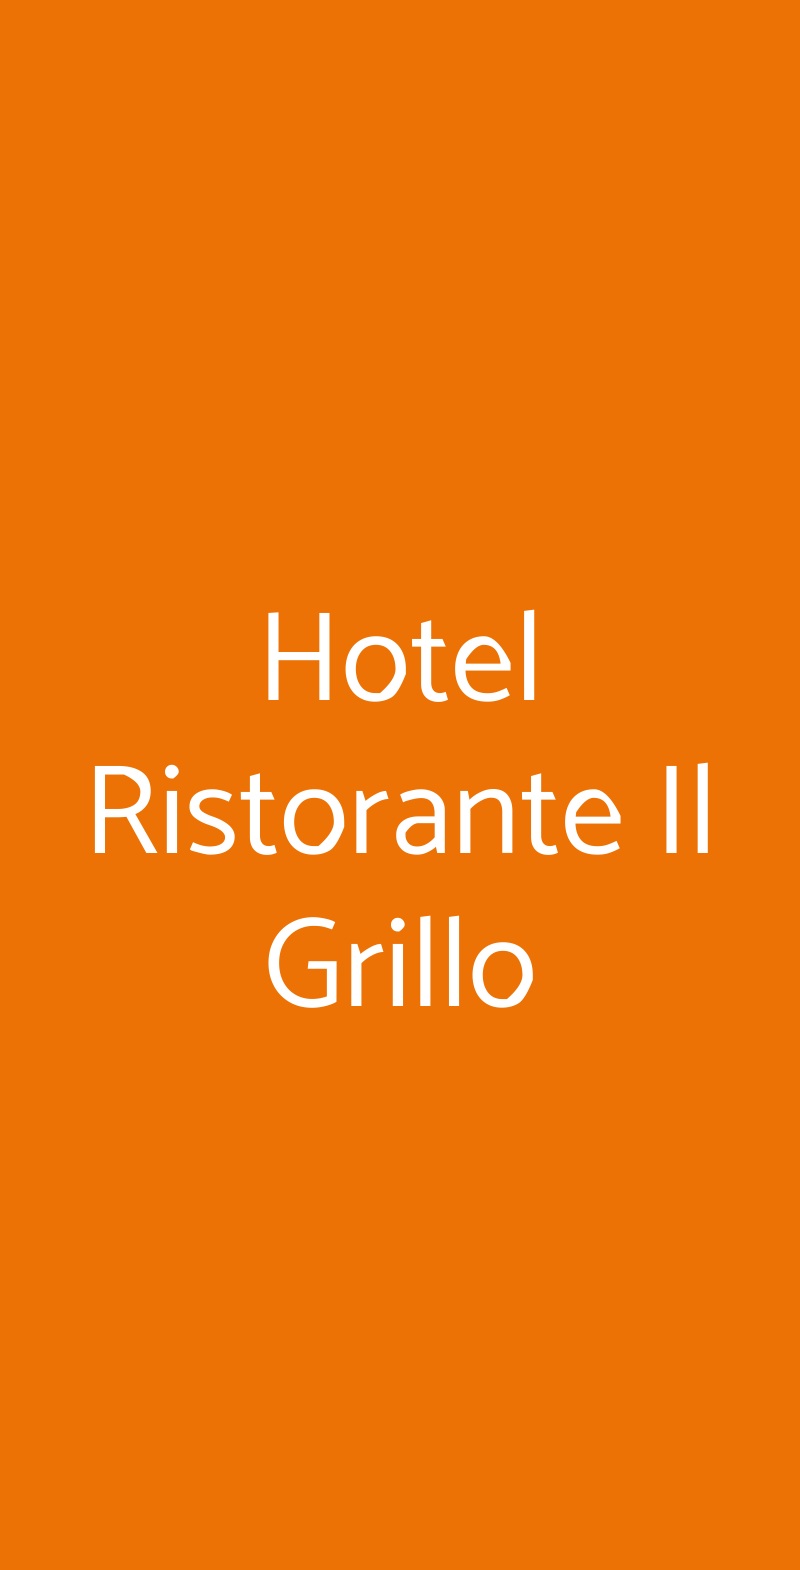 Hotel Ristorante Il Grillo Acquaviva Picena menù 1 pagina